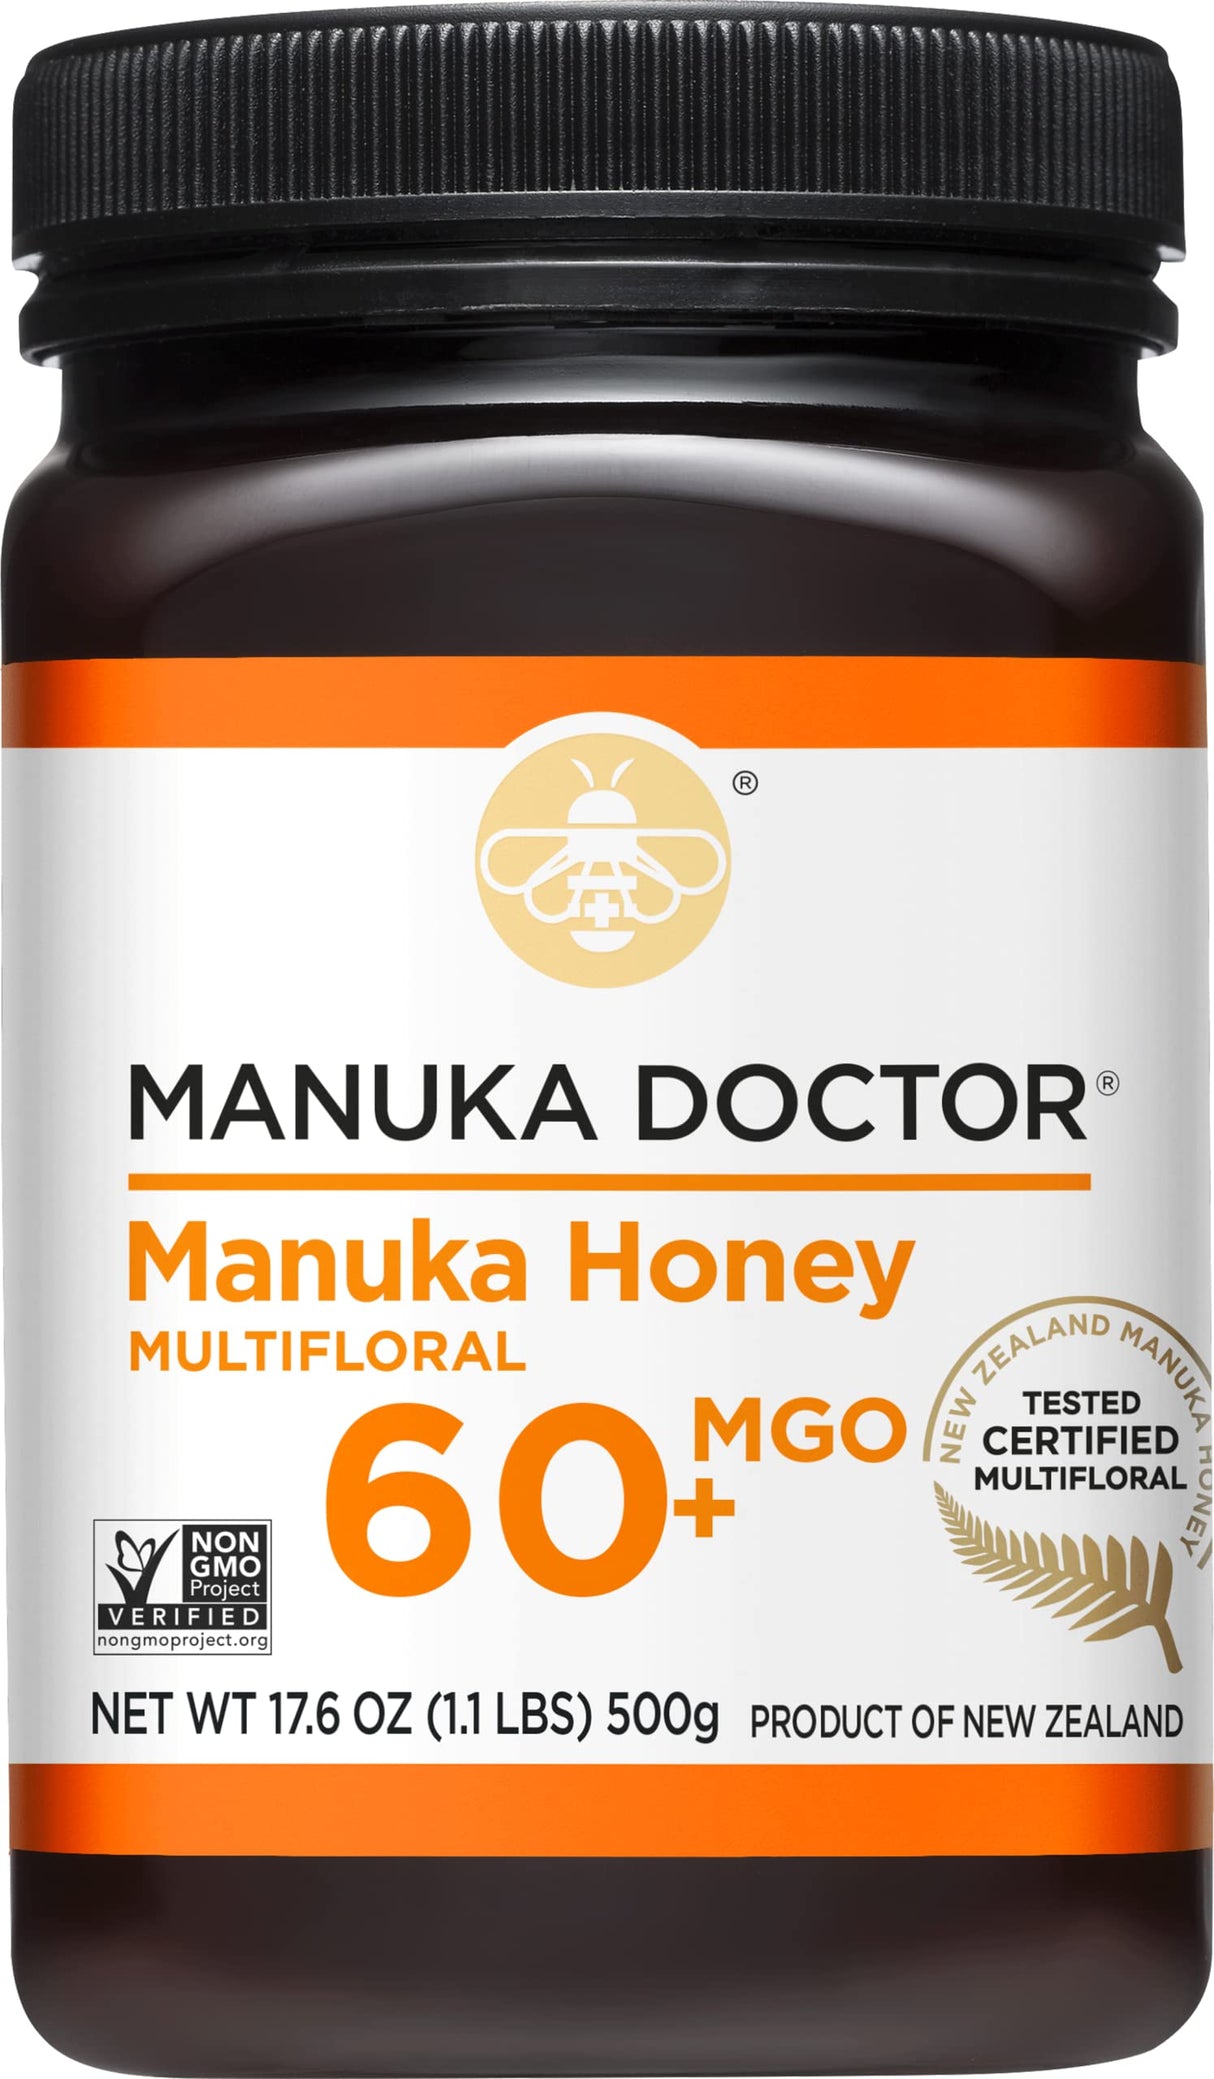 Manuka Doctor - Manuka Honey Mf Mgo60+ 500G - -17.6 Oz